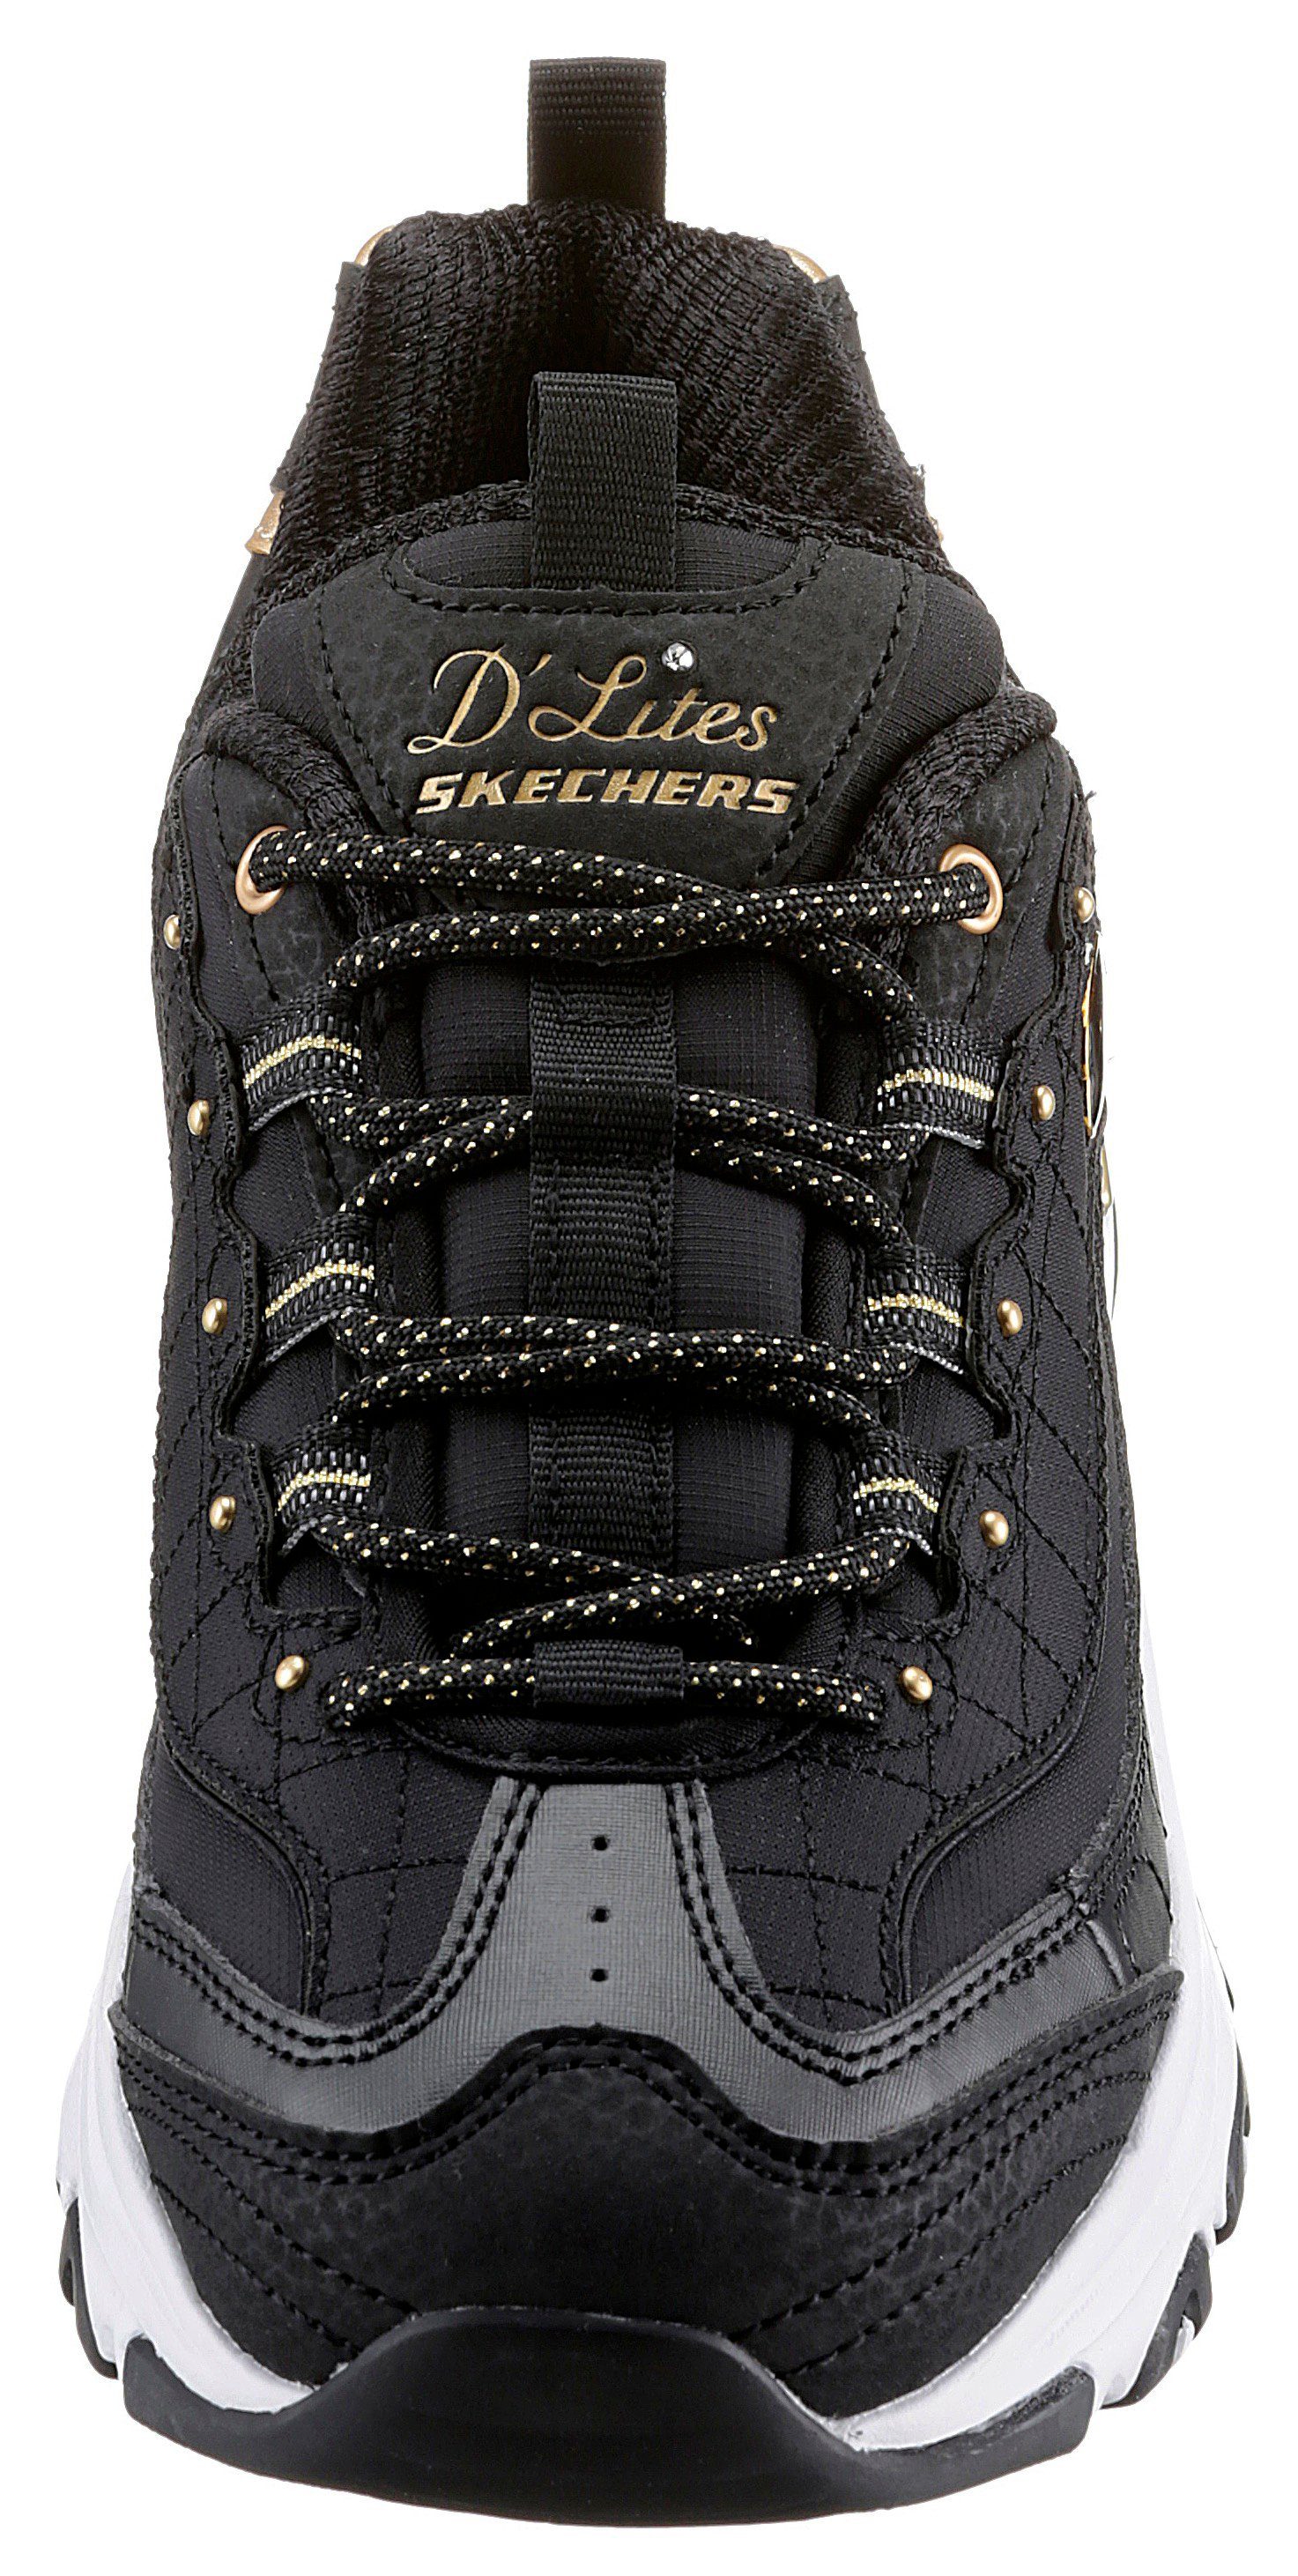 Metallic-Details mit schönen Sneaker D'LITES schwarz-goldfarben Skechers